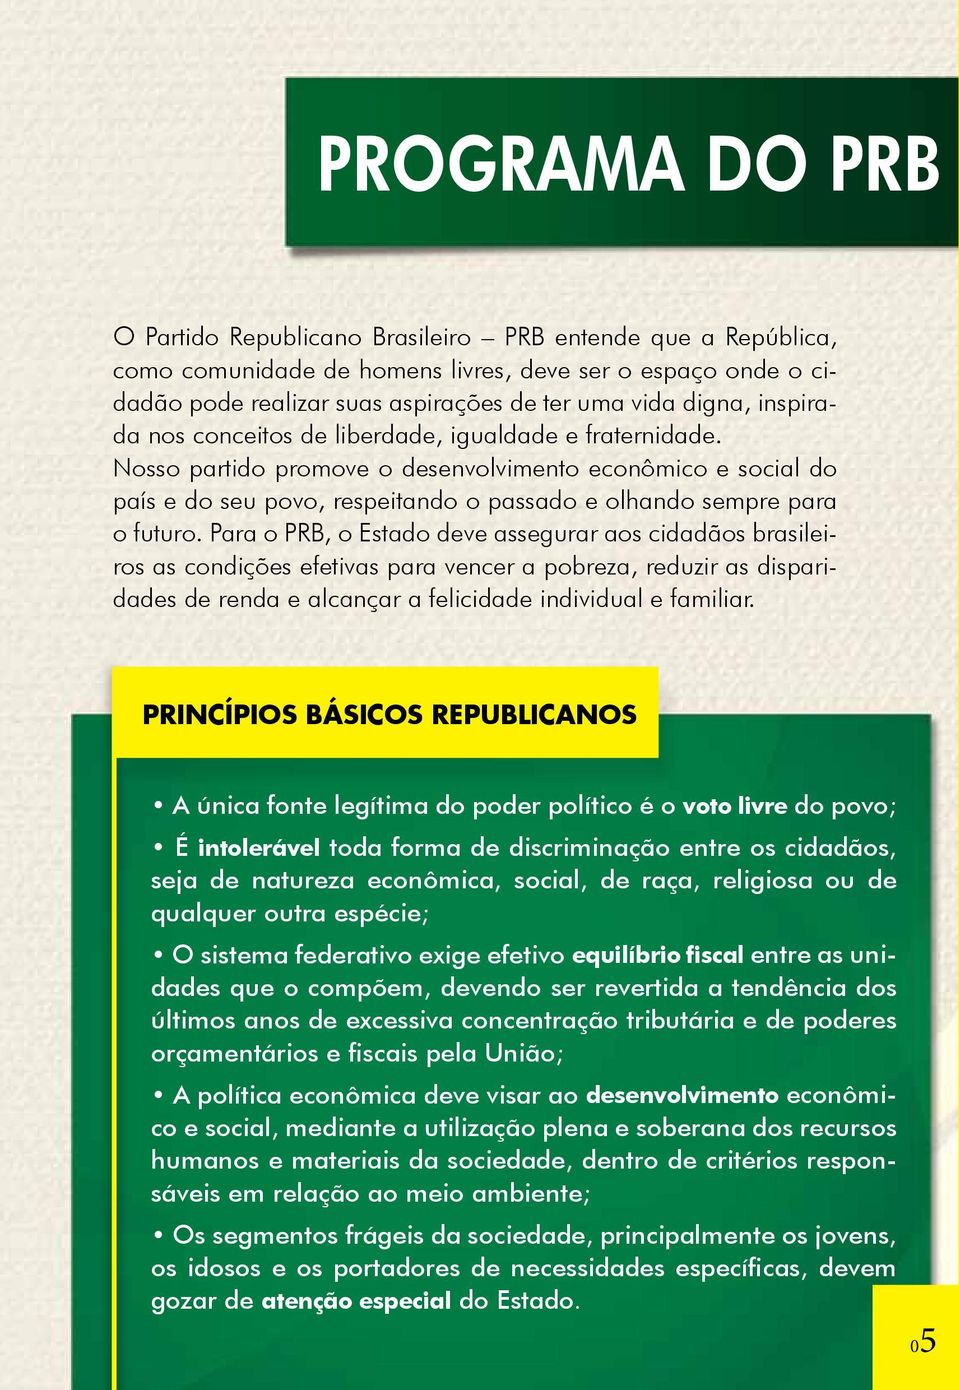 Para o PRB, o Estado deve assegurar aos cidadãos brasileiros as condições efetivas para vencer a pobreza, reduzir as disparidades de renda e alcançar a felicidade individual e familiar.